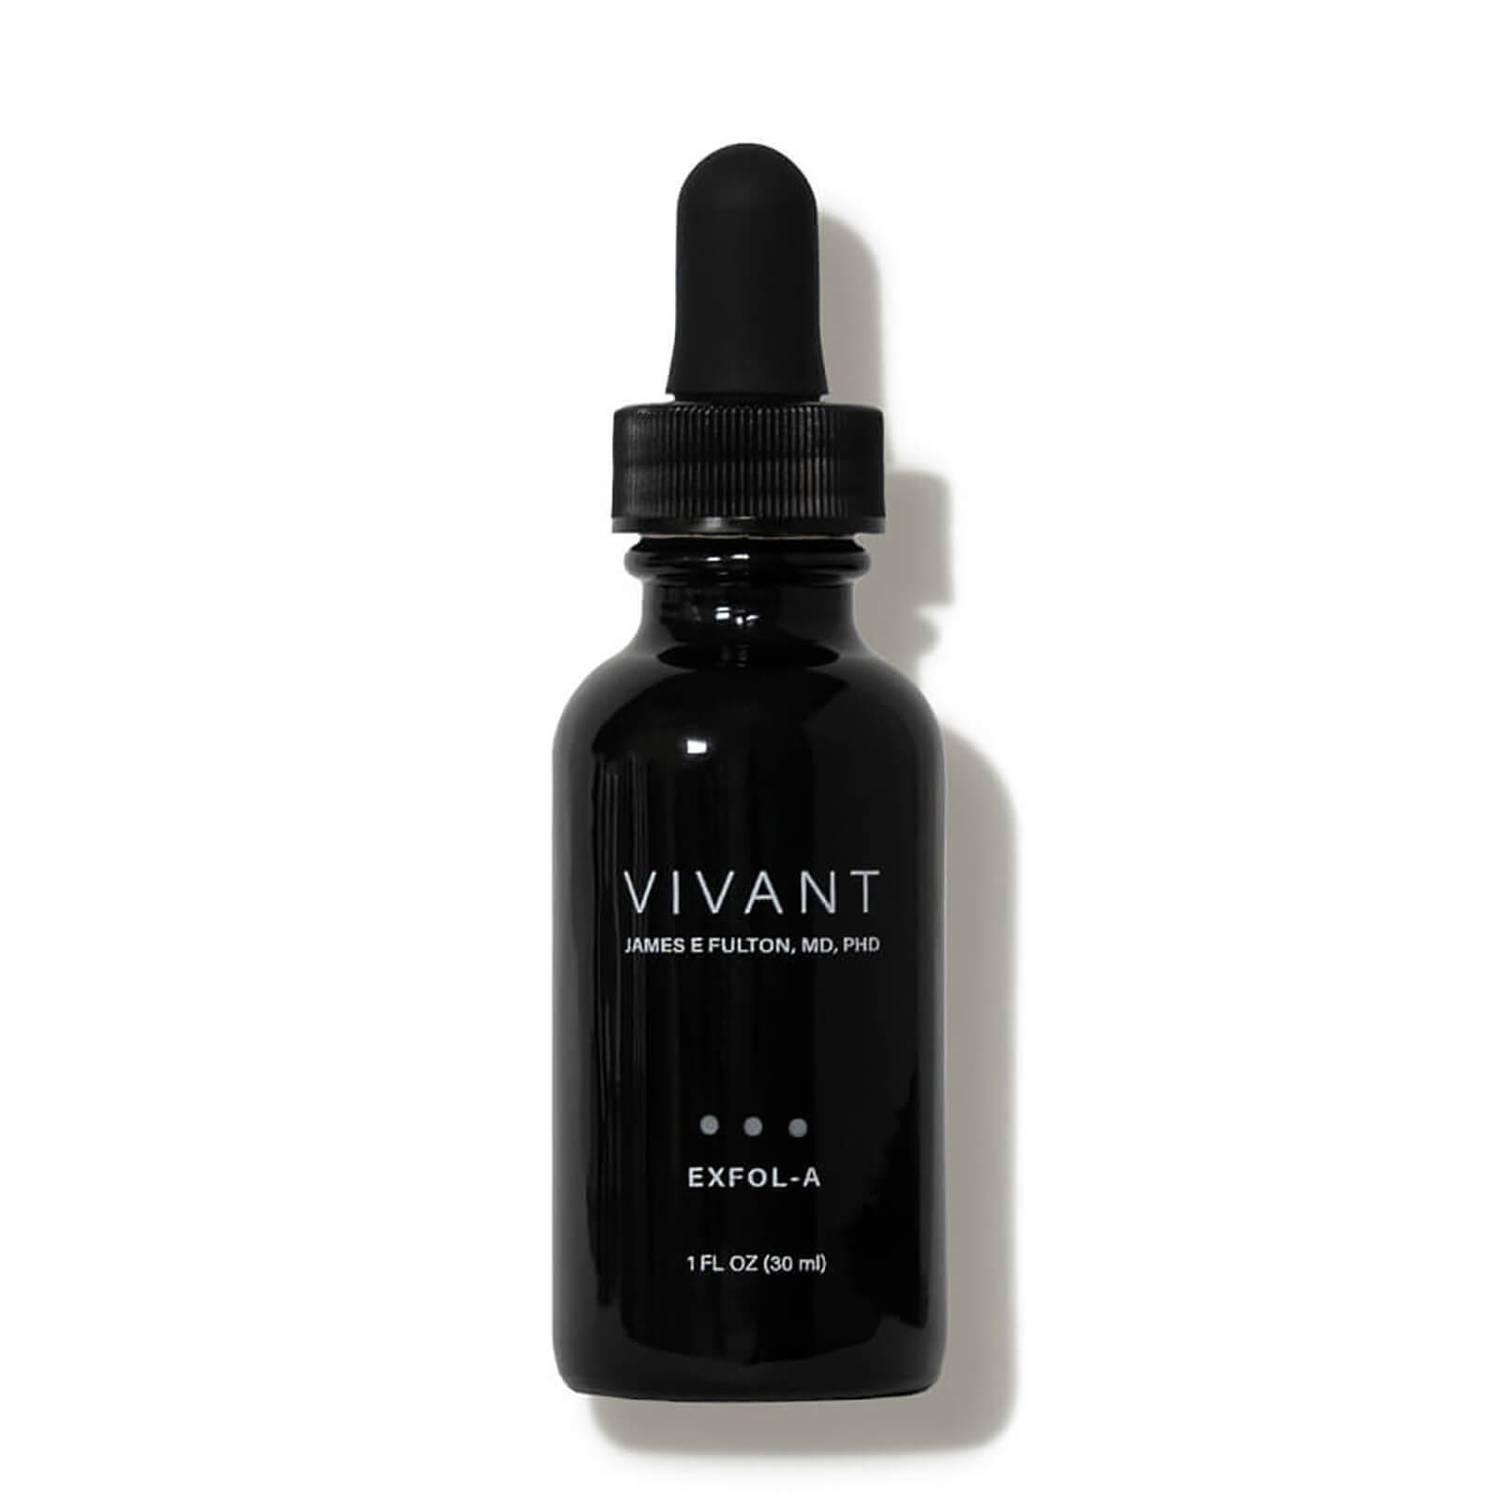 VIVANT - Serum giảm nếp nhăn, sẹo mụn và tăng sắc tố Exfol-A 30ml